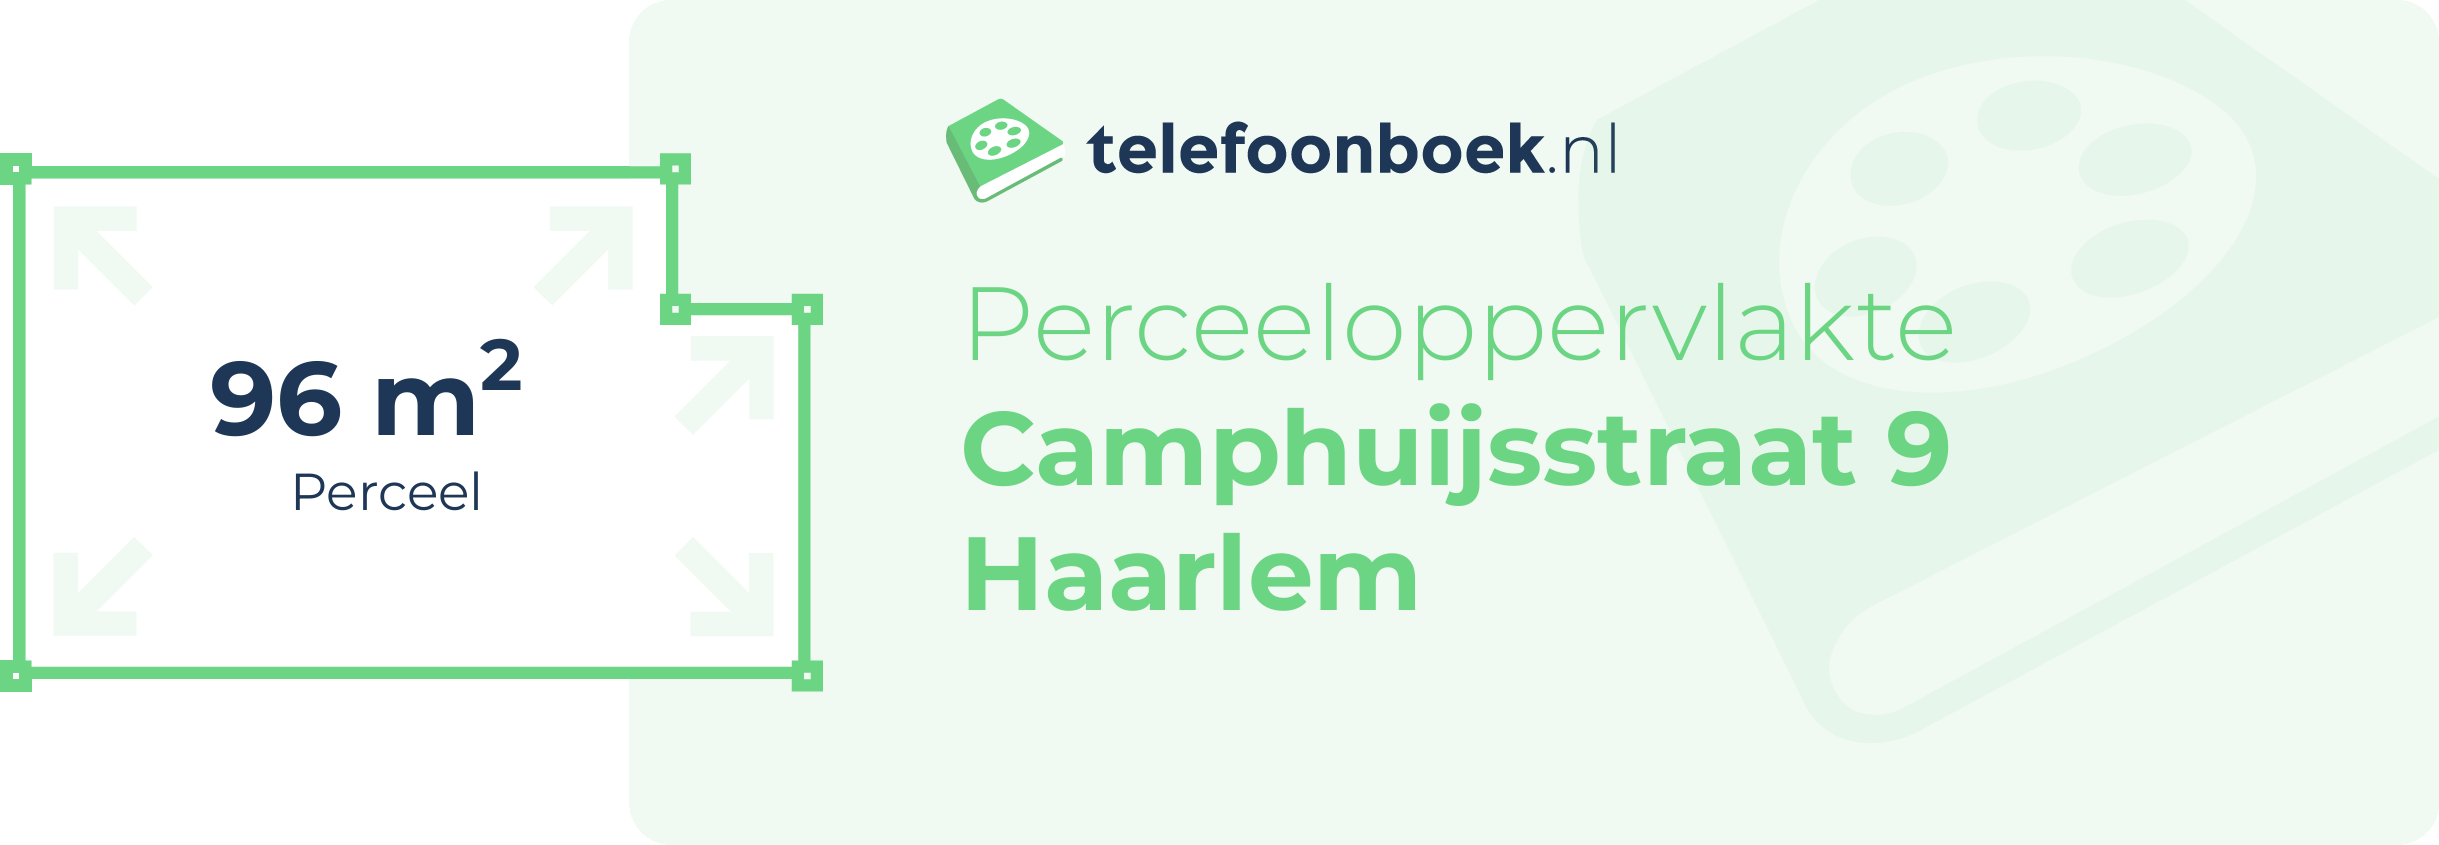 Perceeloppervlakte Camphuijsstraat 9 Haarlem